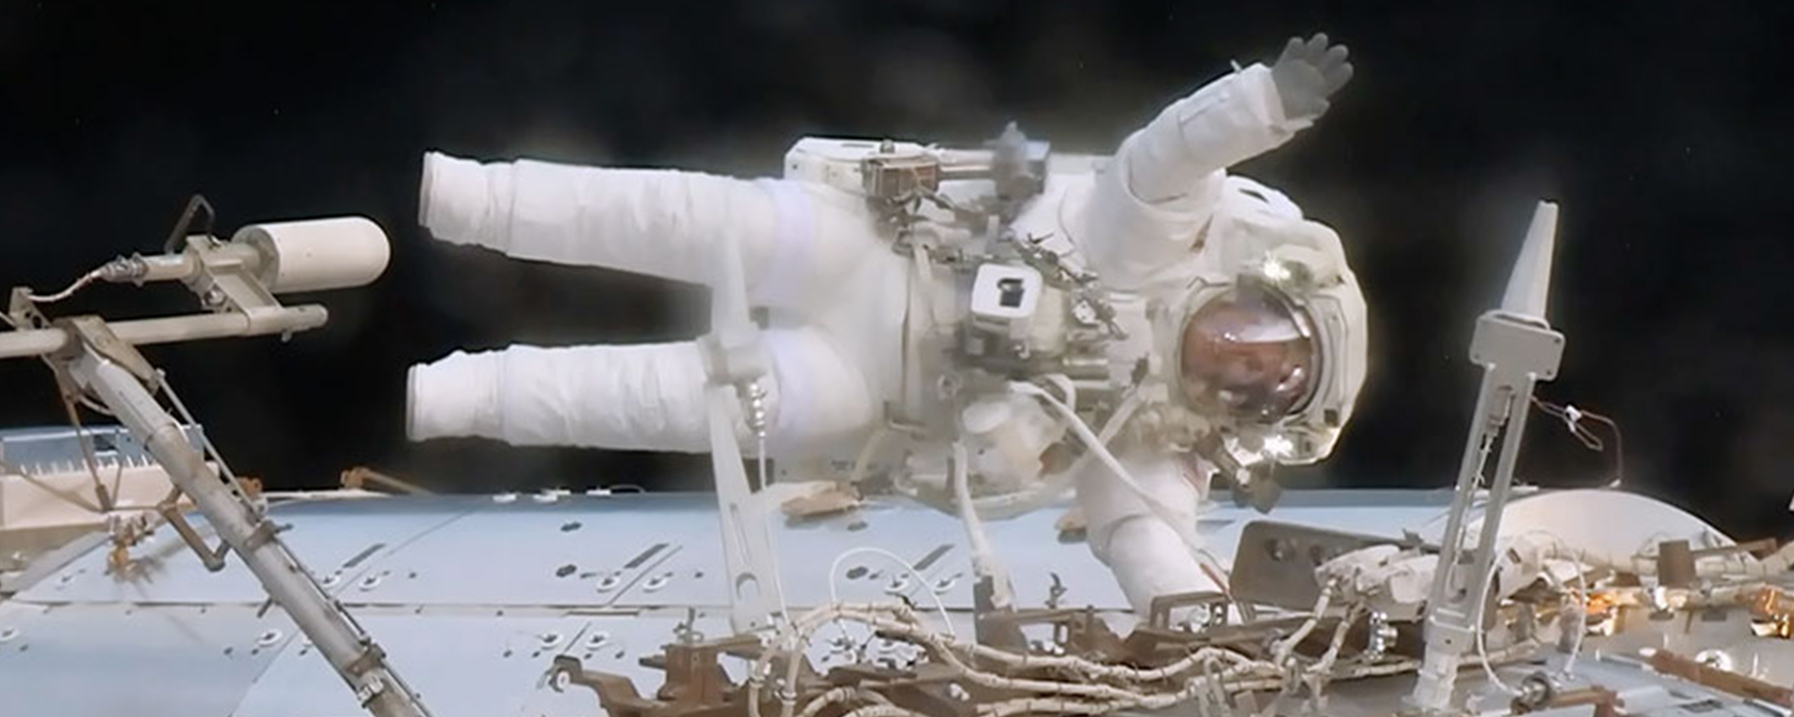 Jack Fischer on a Spacewalk